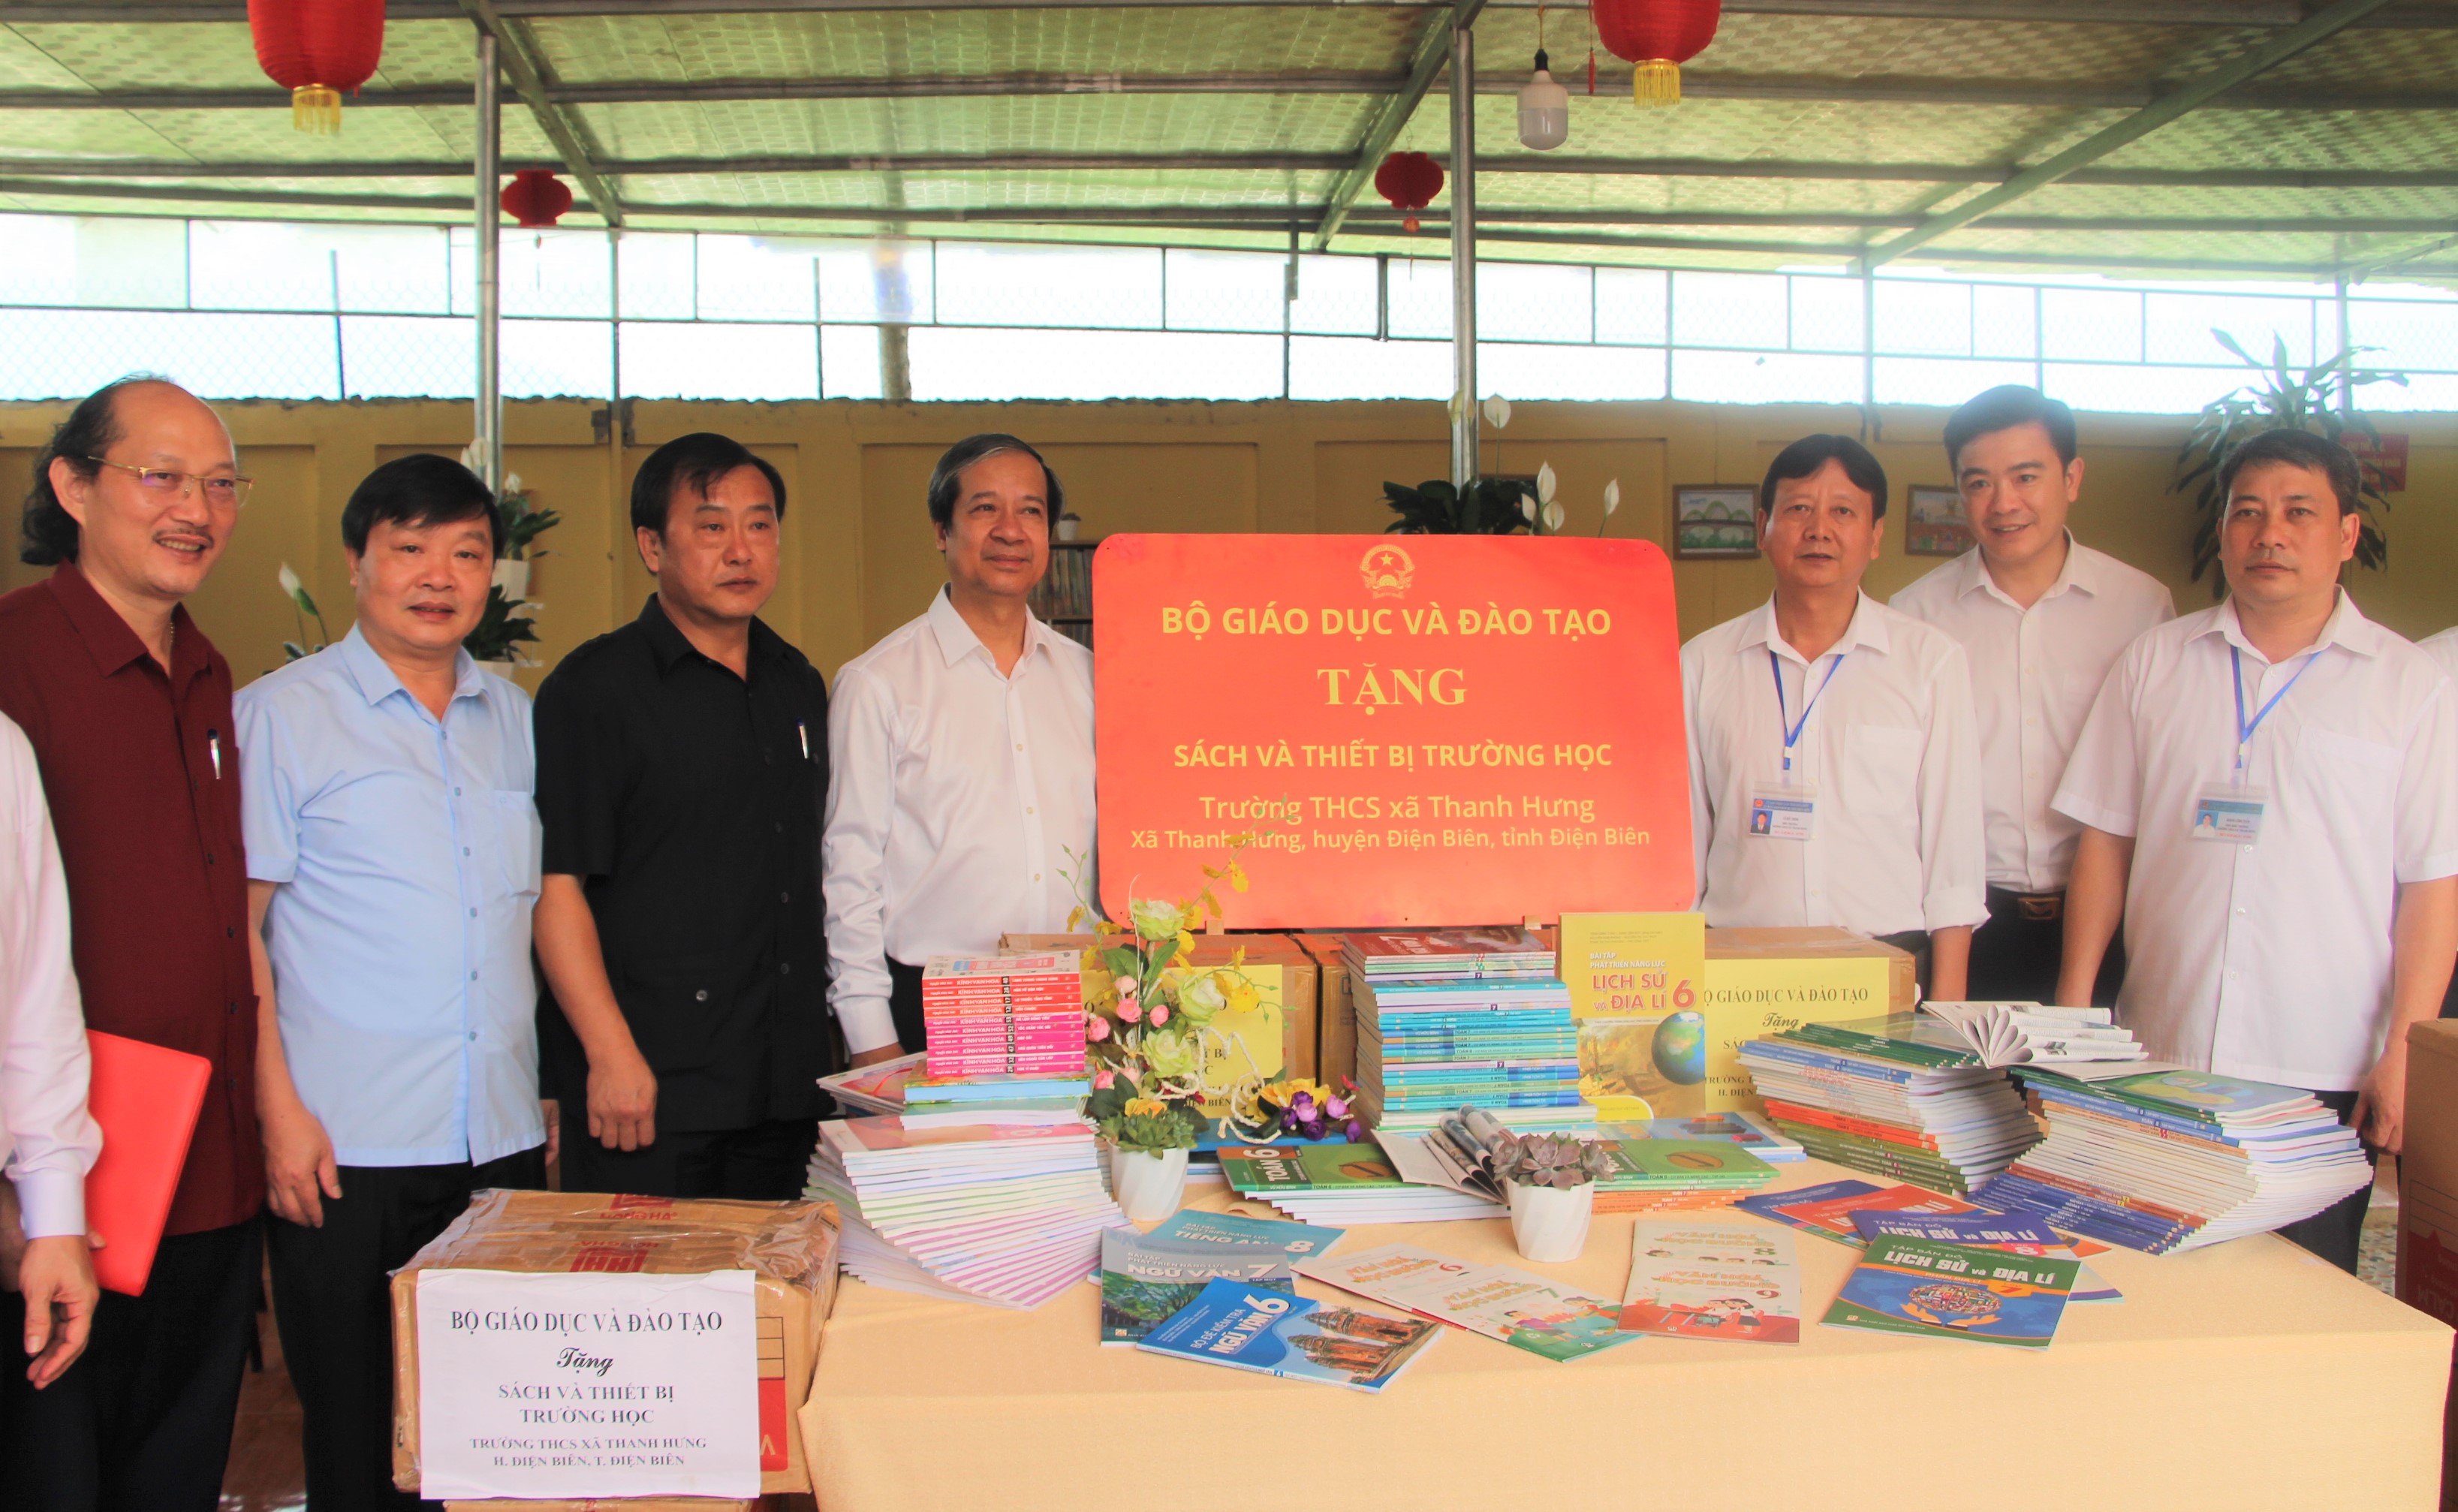 Trao tặng sách và thiết bị trường học cho Trường THCS Thanh Hưng.